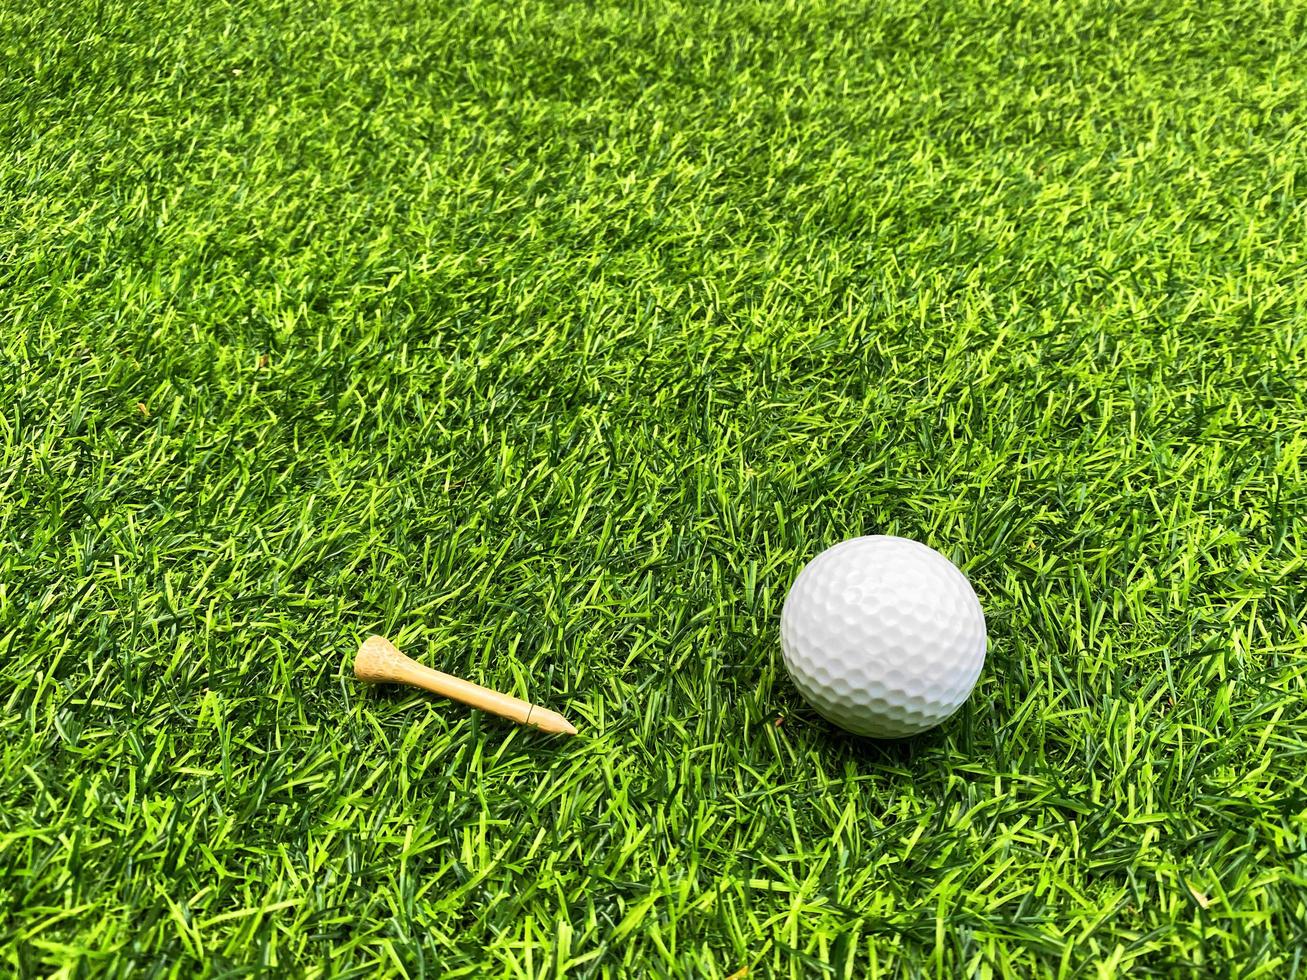 golfball nah oben auf grünem gras auf unscharfer schöner landschaft des golfhintergrundes.konzept internationaler sport, der auf präzisionsfähigkeiten zur gesundheitsentspannung angewiesen ist. foto